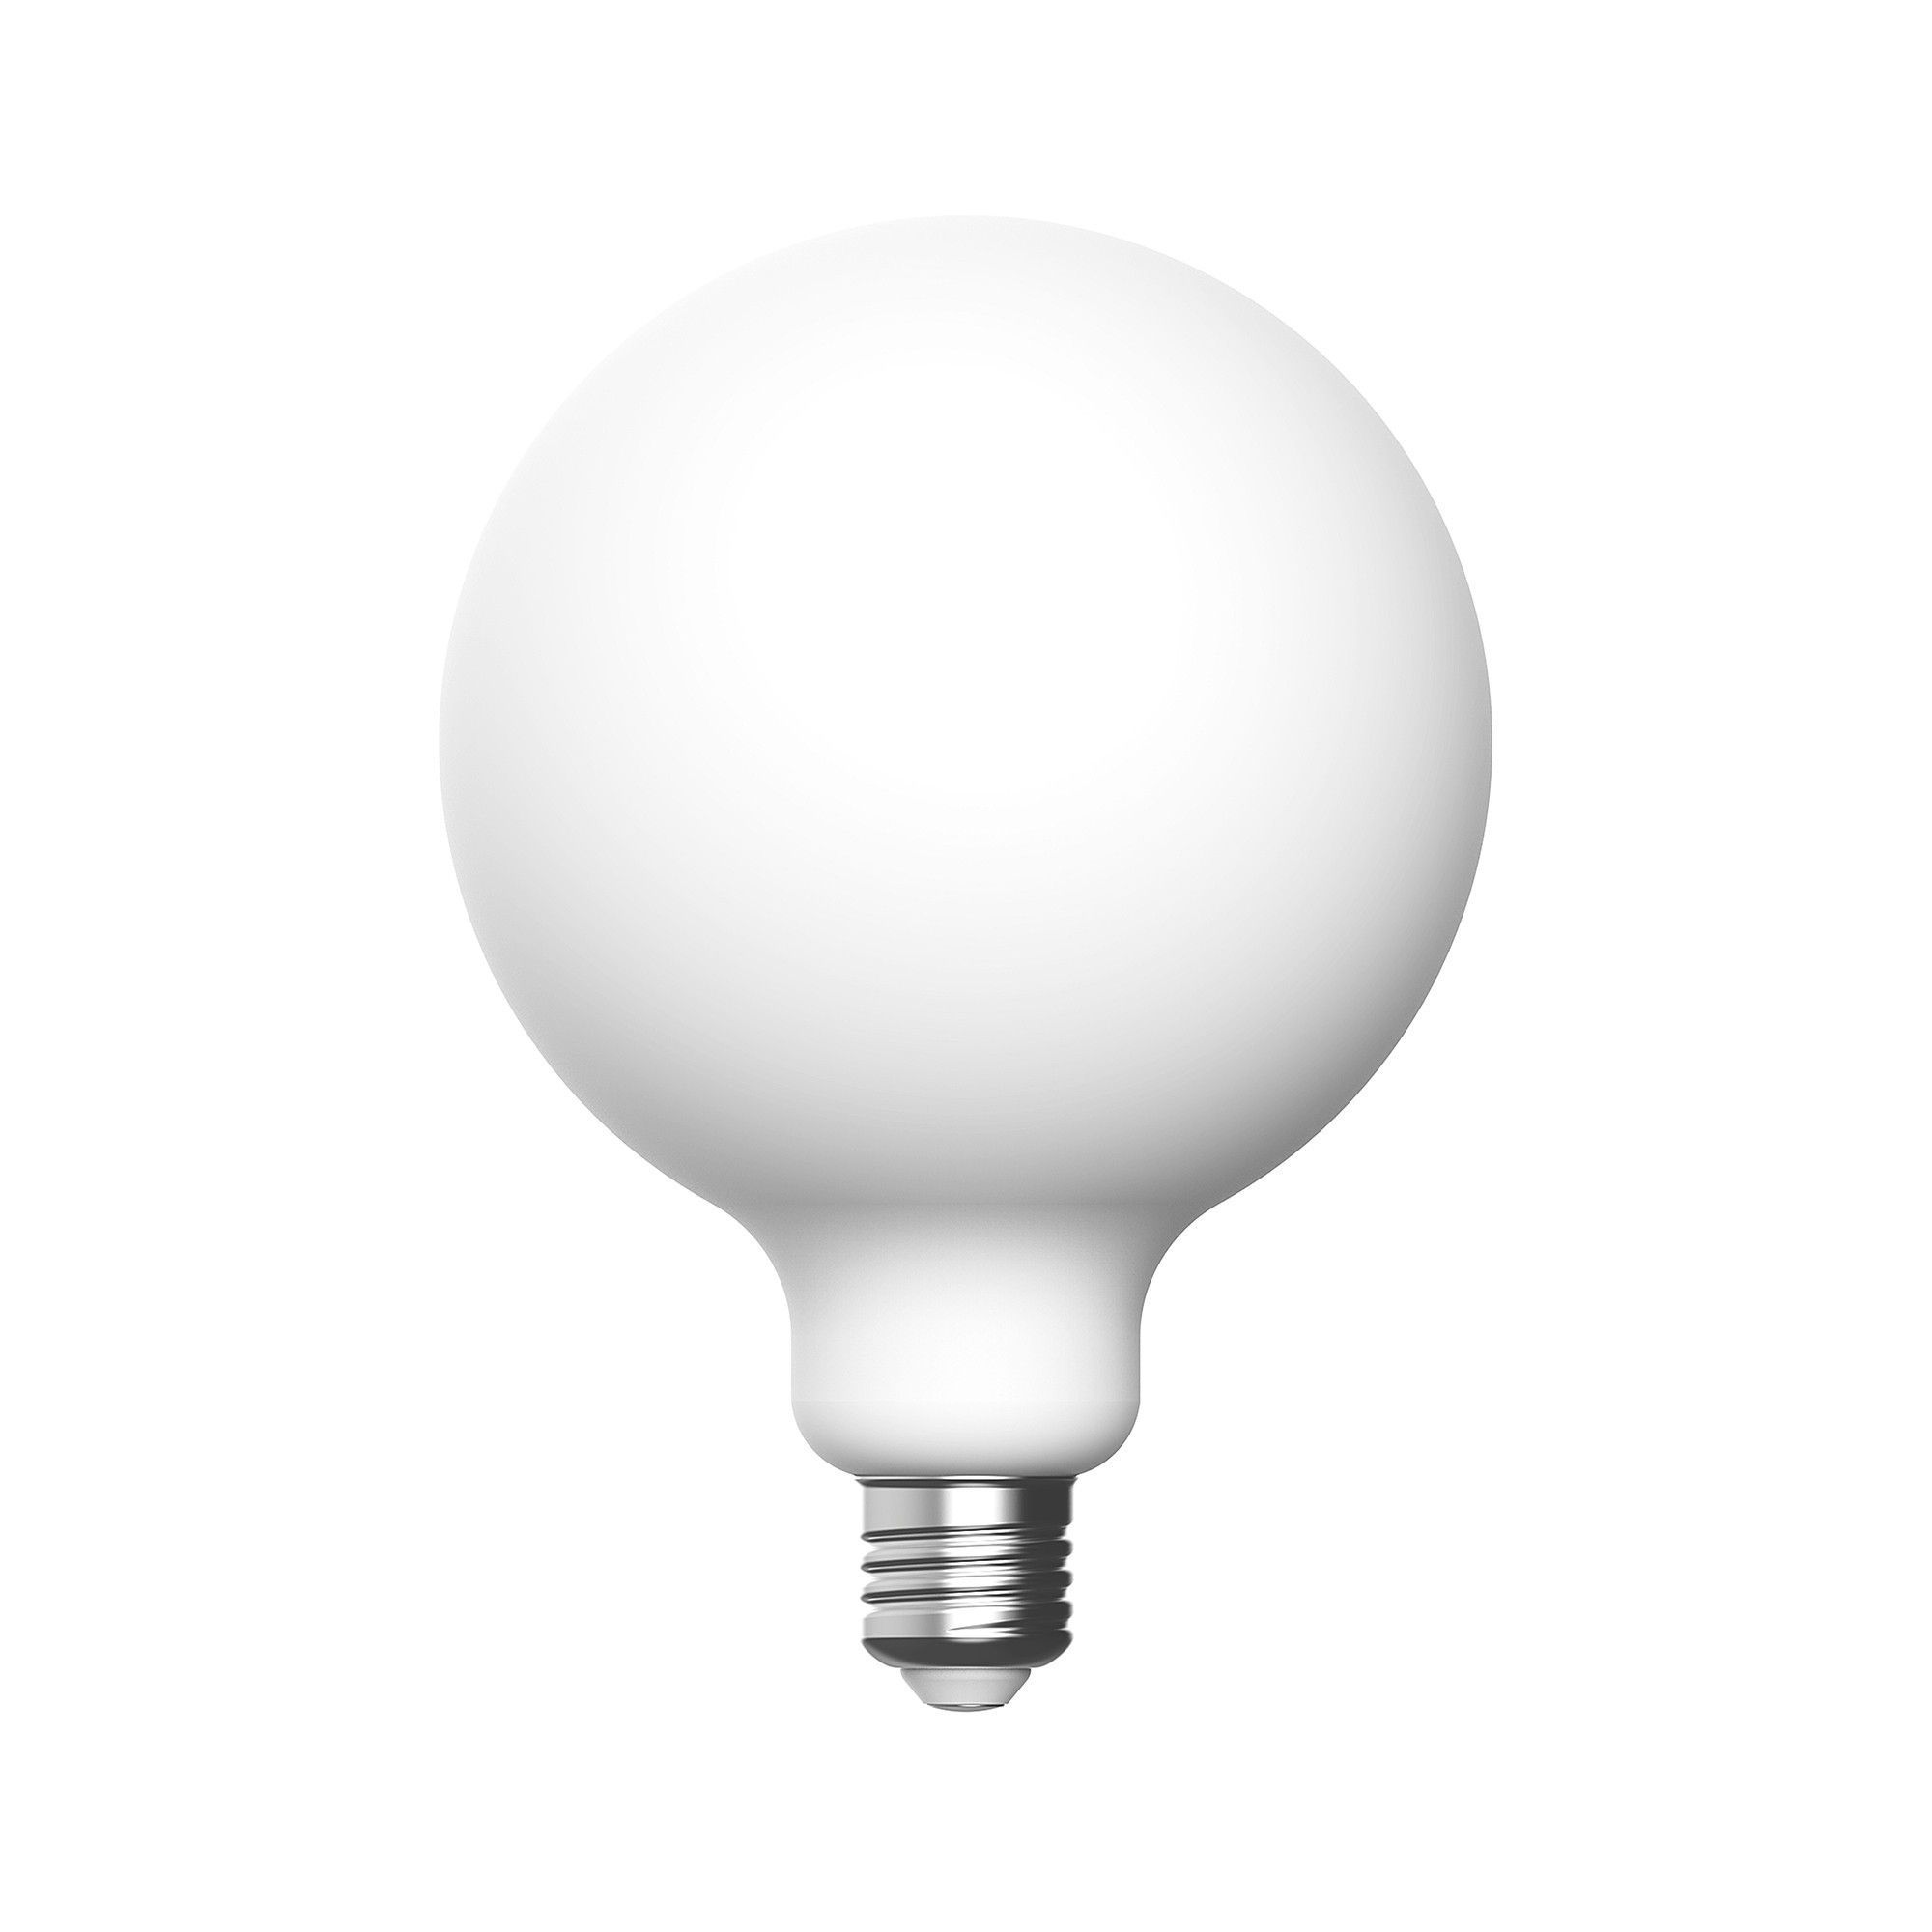 P04 - LED Light Bulb G125, E27, 7W, 2700K, 640Lm, porcelain effect